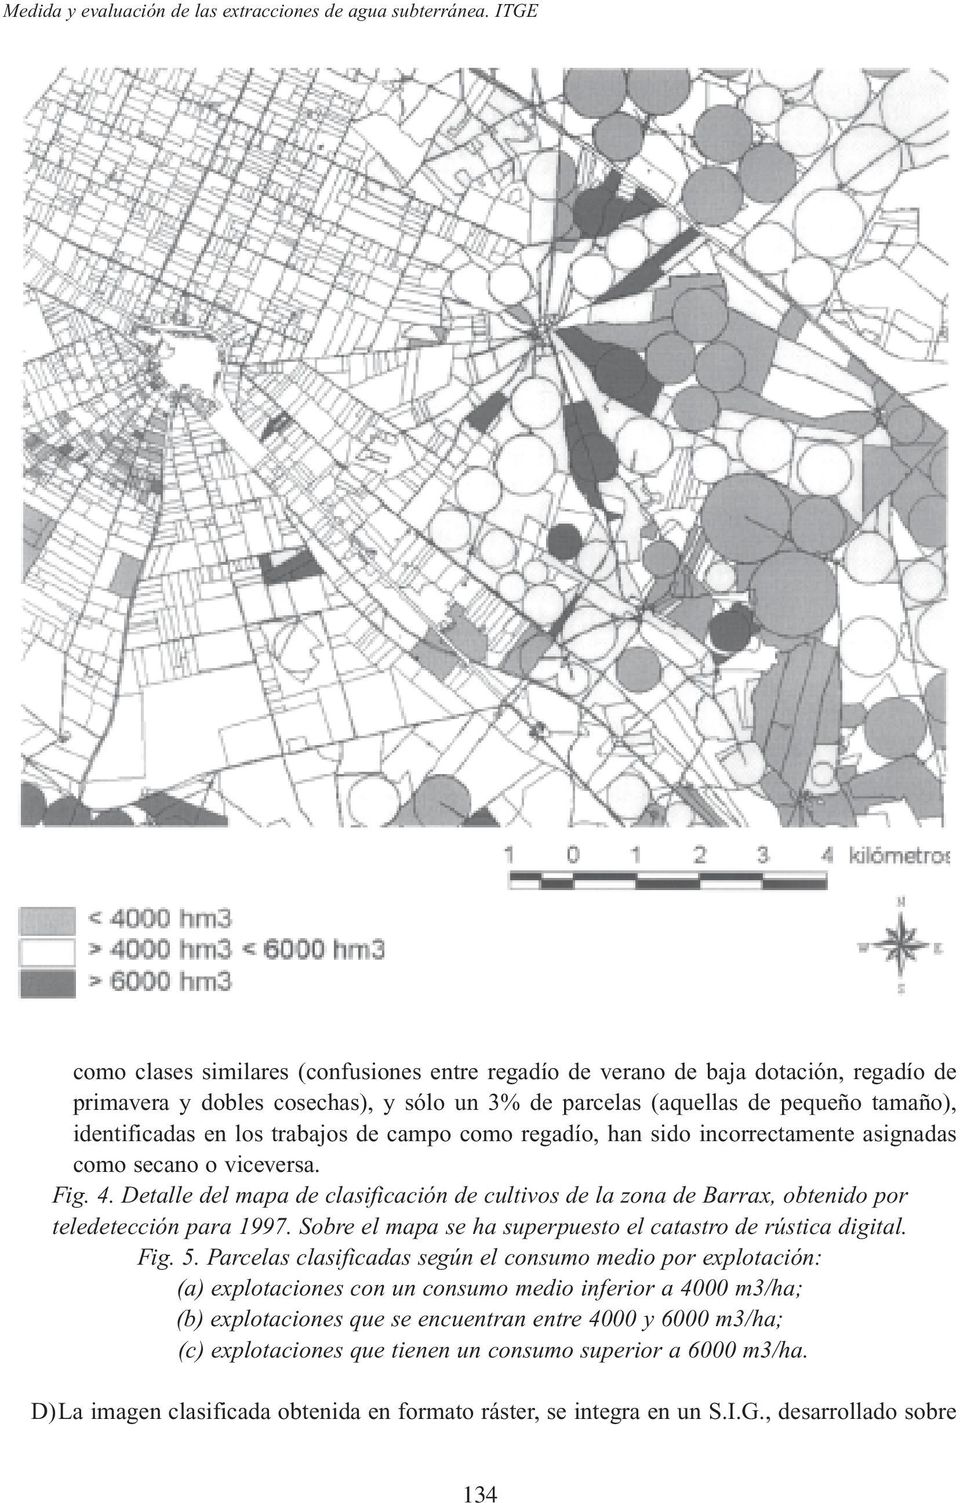 Detalle del mapa de clasificación de cultivos de la zona de Barrax, obtenido por teledetección para 1997. Sobre el mapa se ha superpuesto el catastro de rústica digital. Fig. 5.